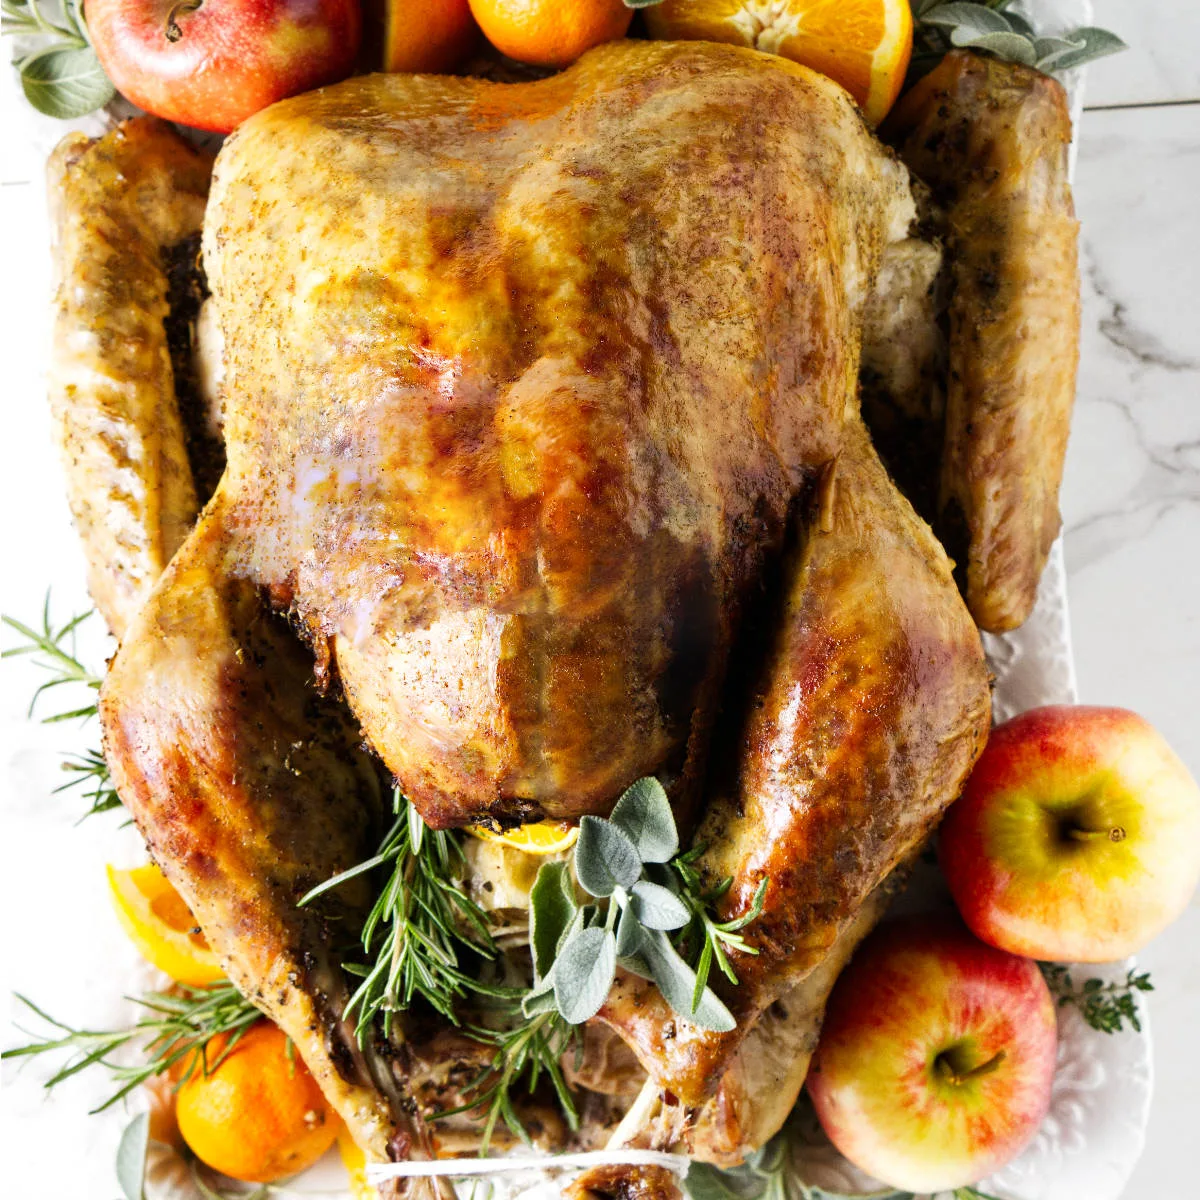 A golden brown turkey on a serving platter.